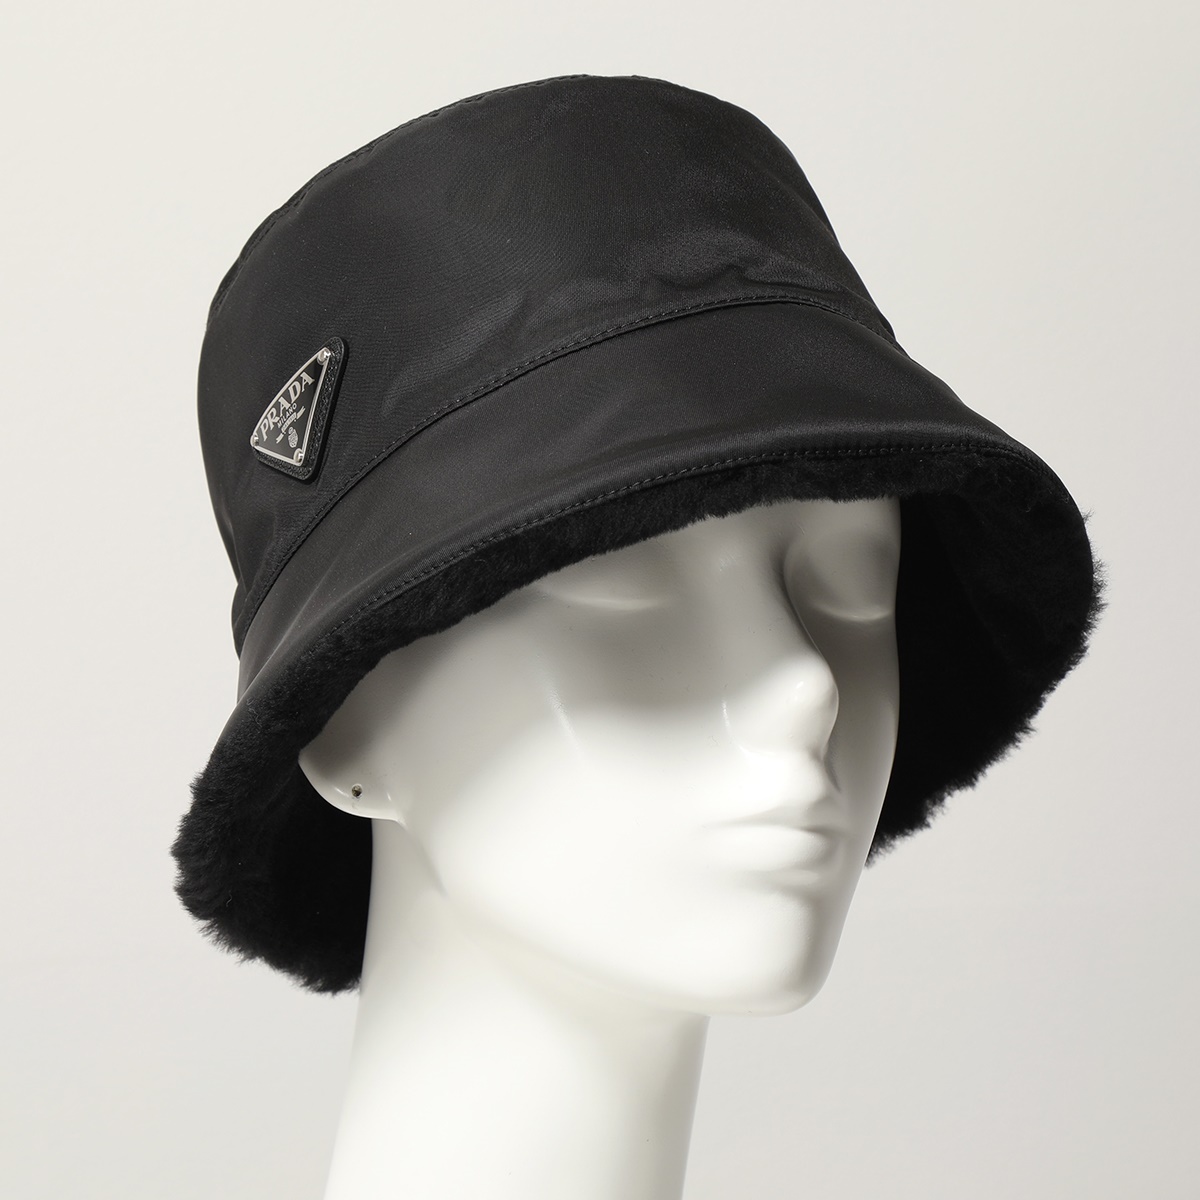 プラダ PRADA バケットハット ハット ロゴ Lサイズ 帽子 ブラック 黒